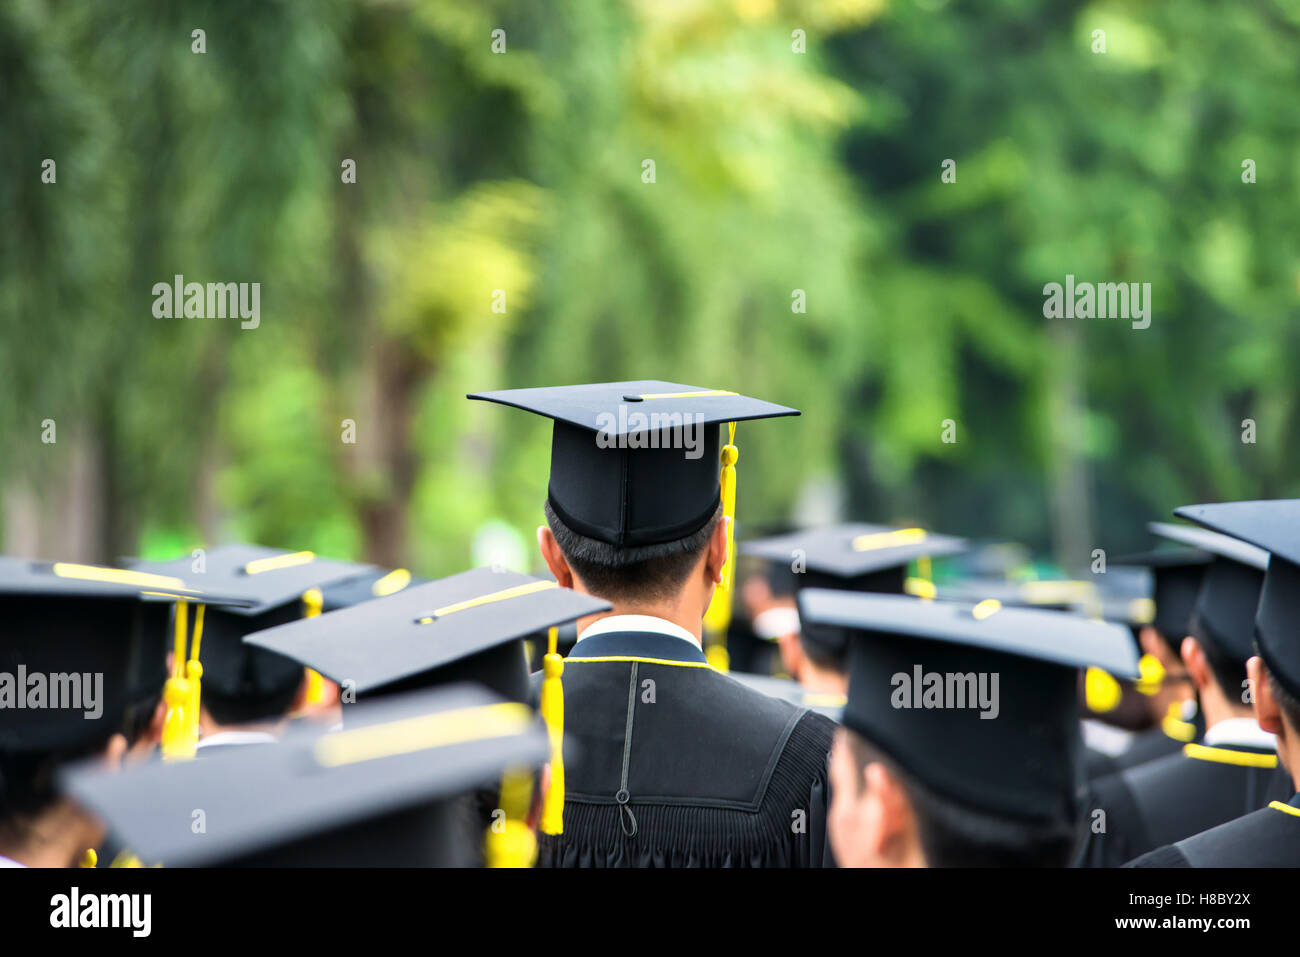 Atrás de los graduados durante el inicio en la universidad. Licenciado caminar. Foto de stock